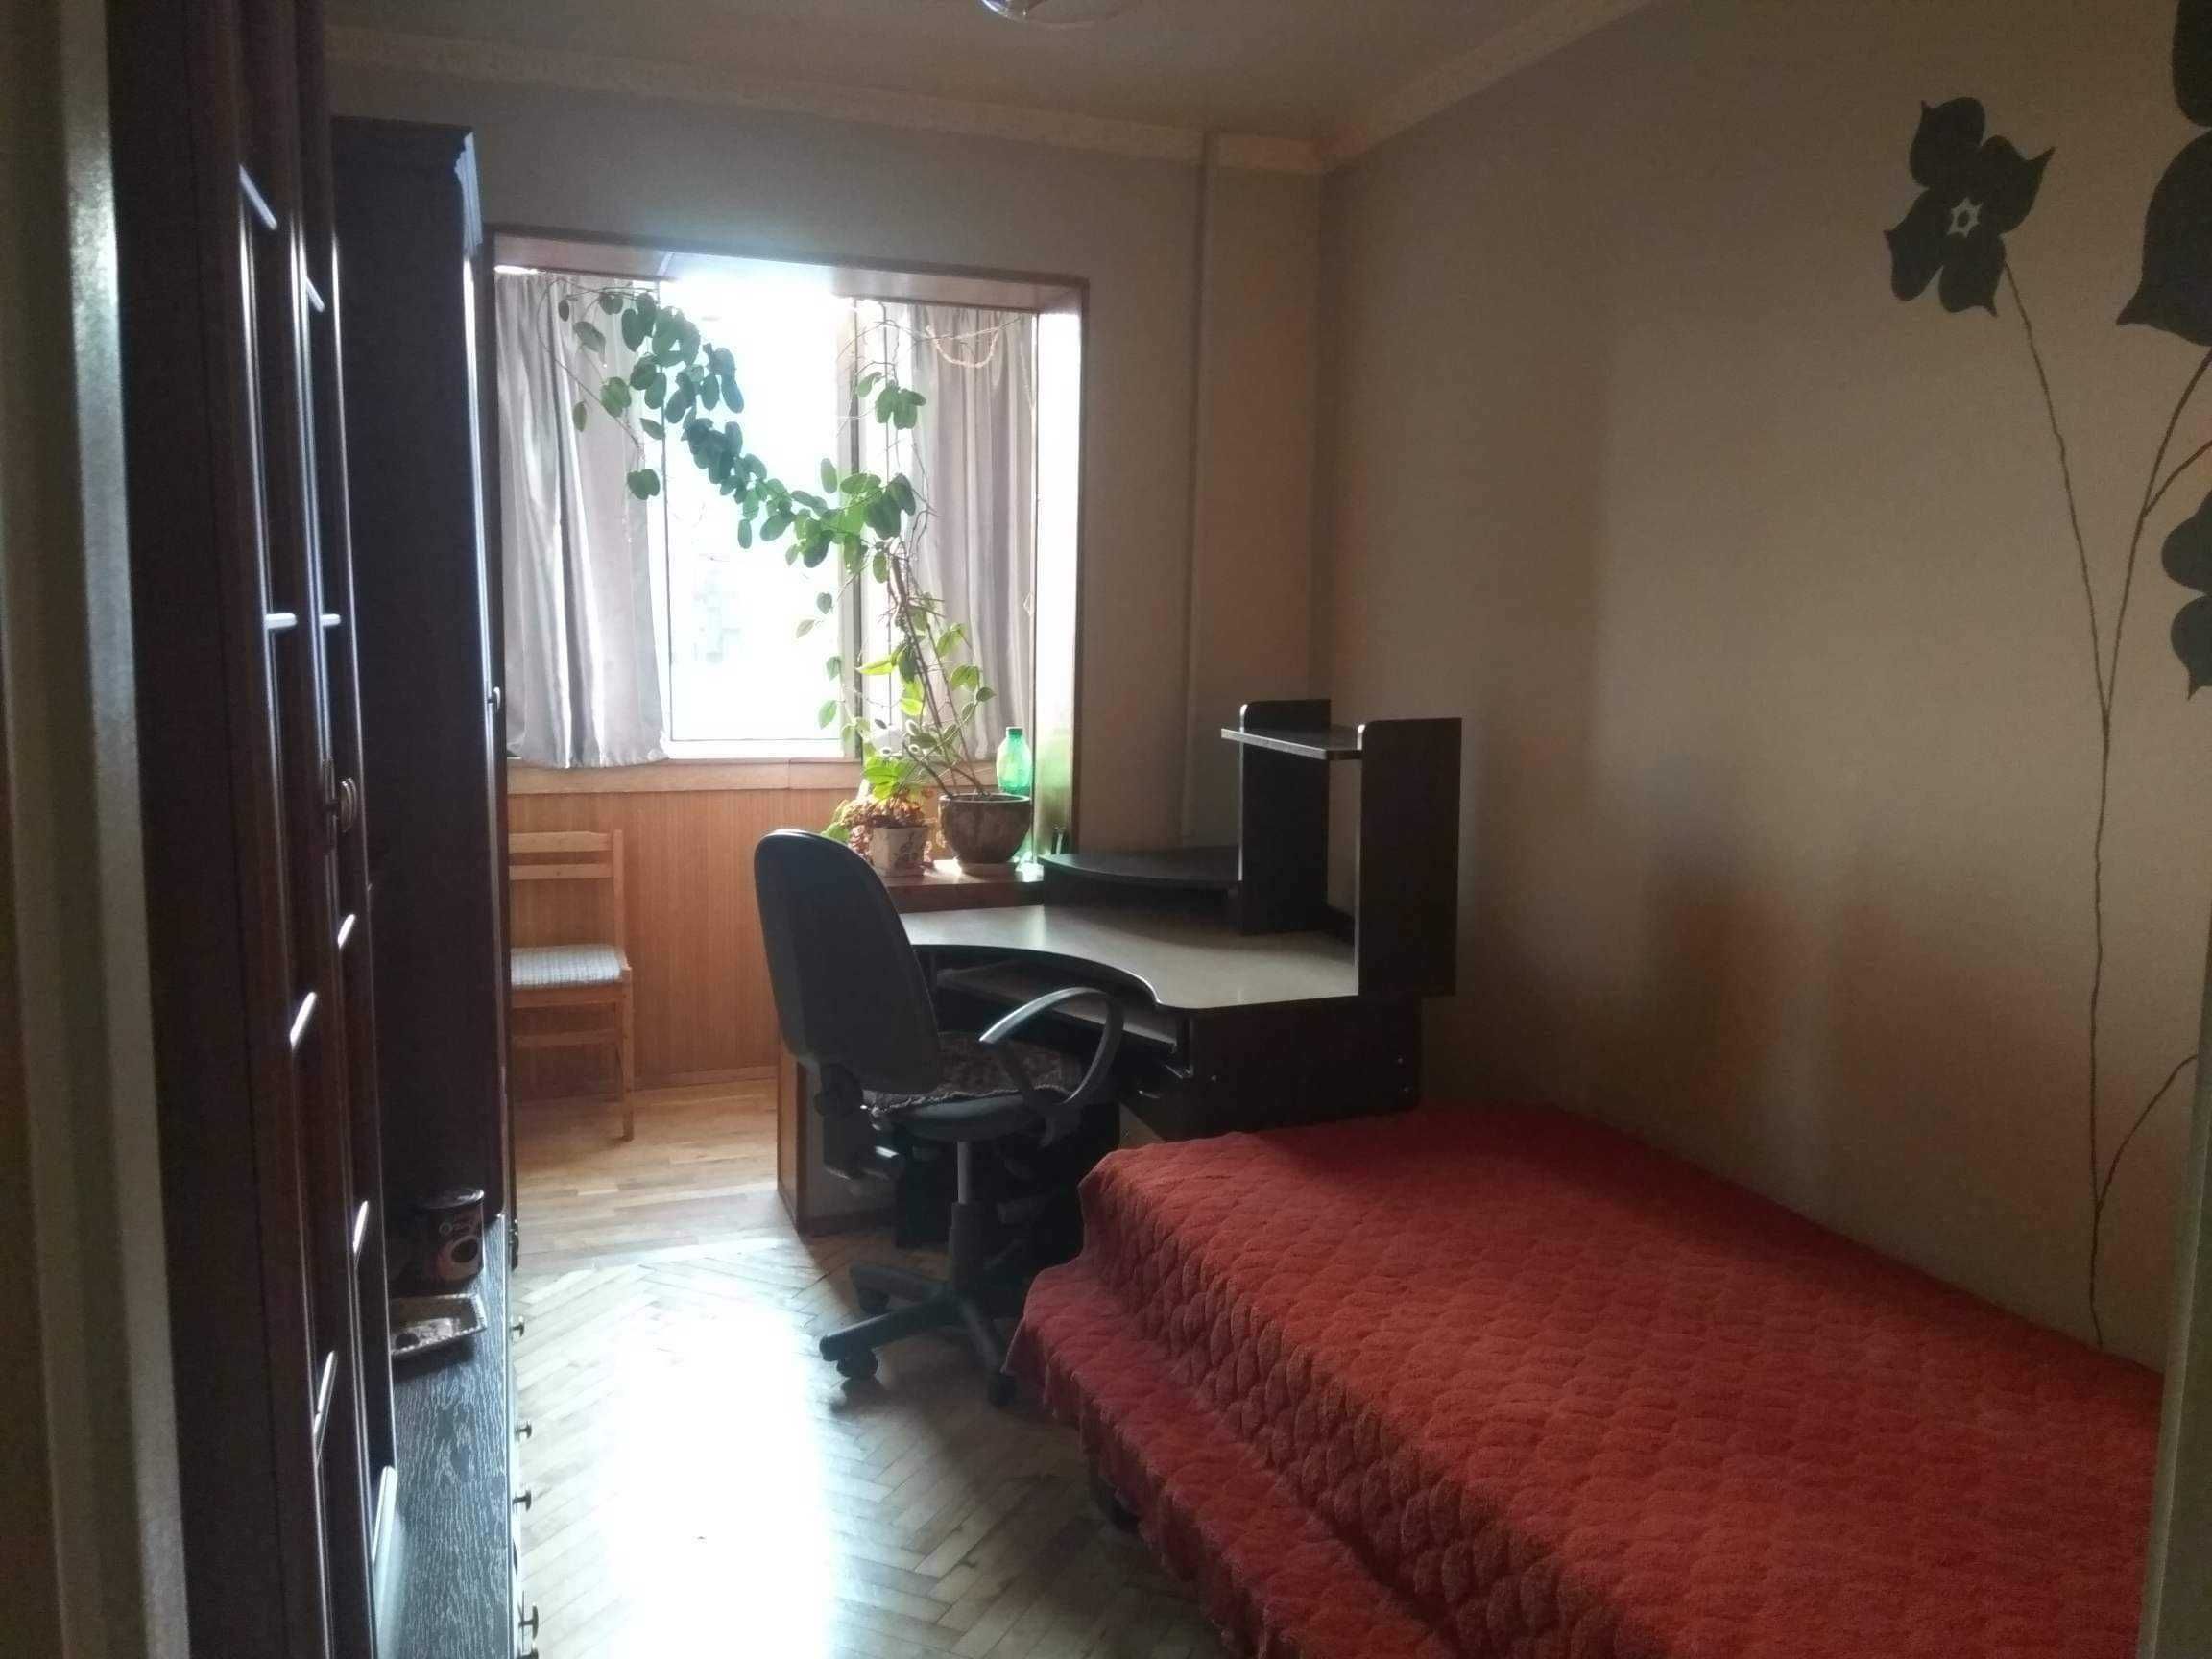 Оренда кімнати для дівчини по вул. Кульпарківській Вікторія Гарденс